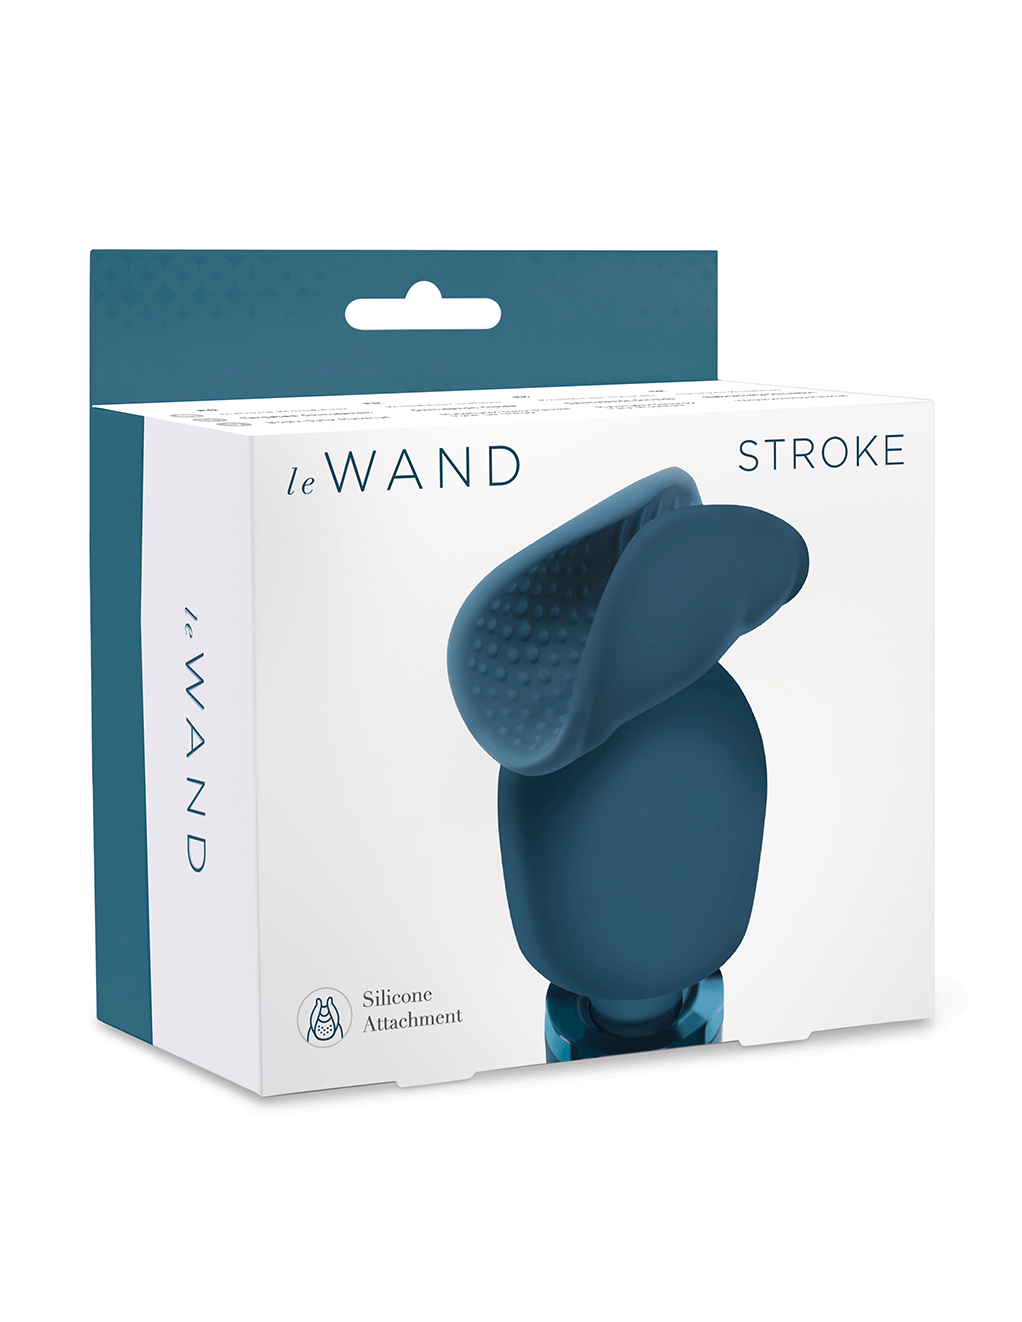 Le Wand Stroke Attachment - Blue - Box